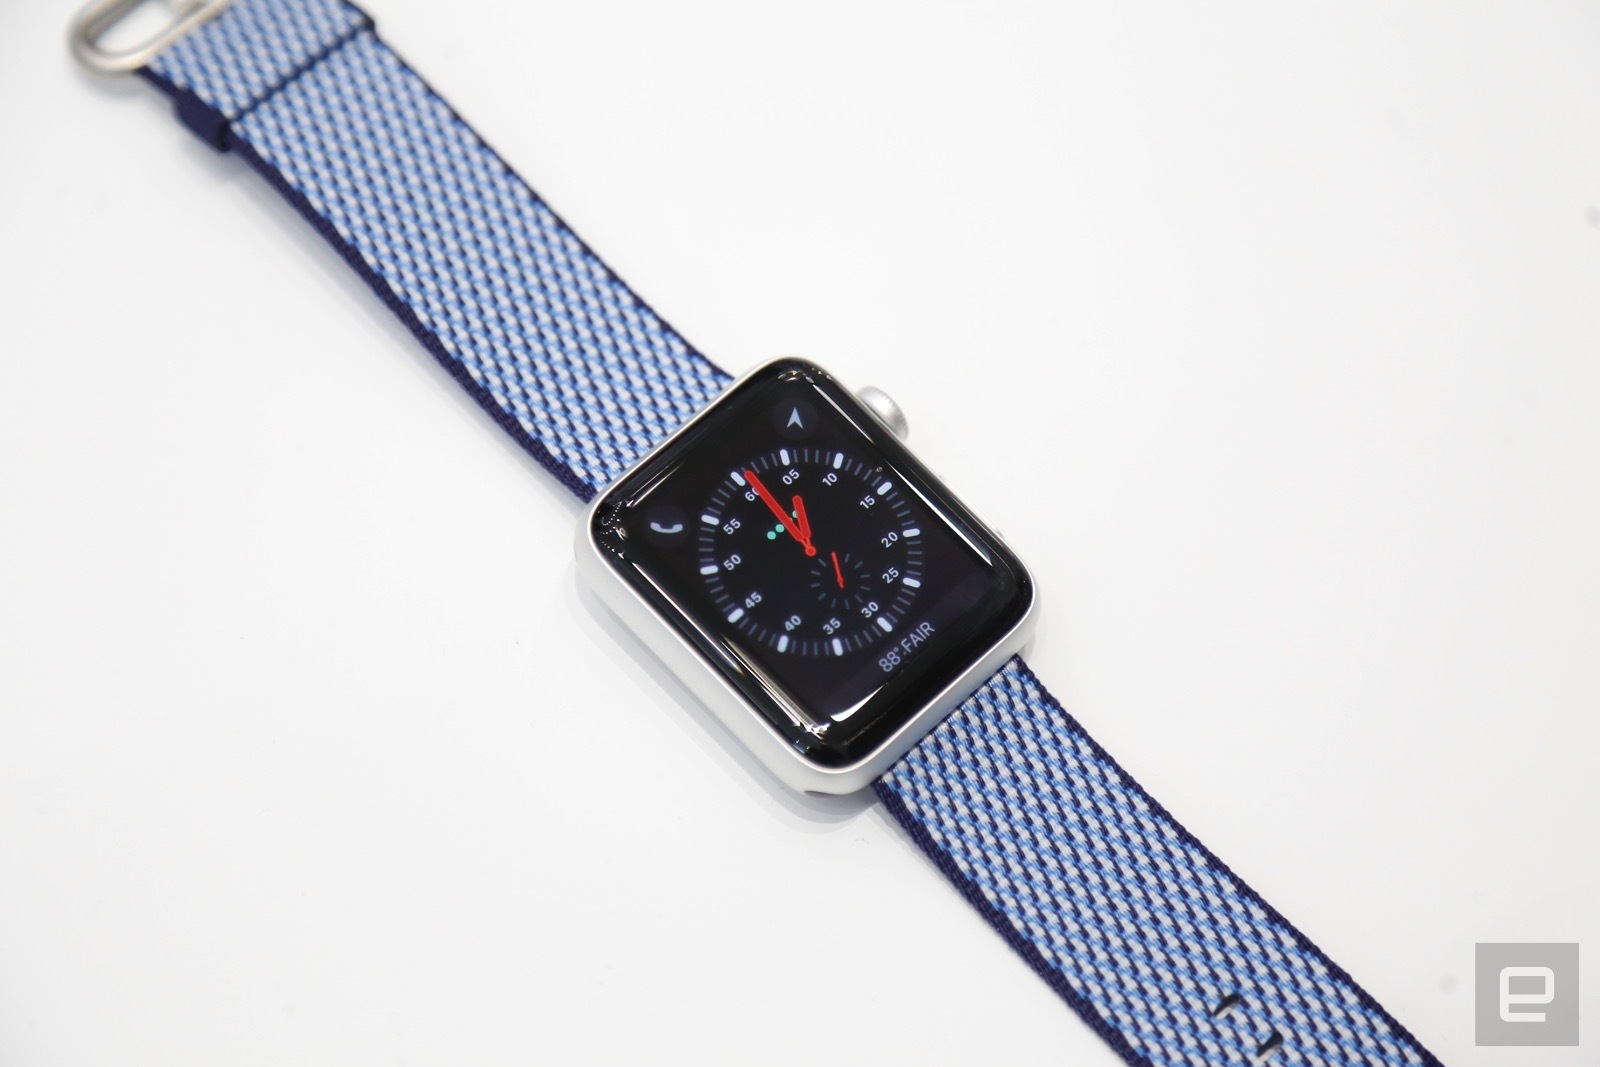 Apple Watch Series 3 LTE mới chỉ hỗ trợ 4 nhà mạng của Mỹ